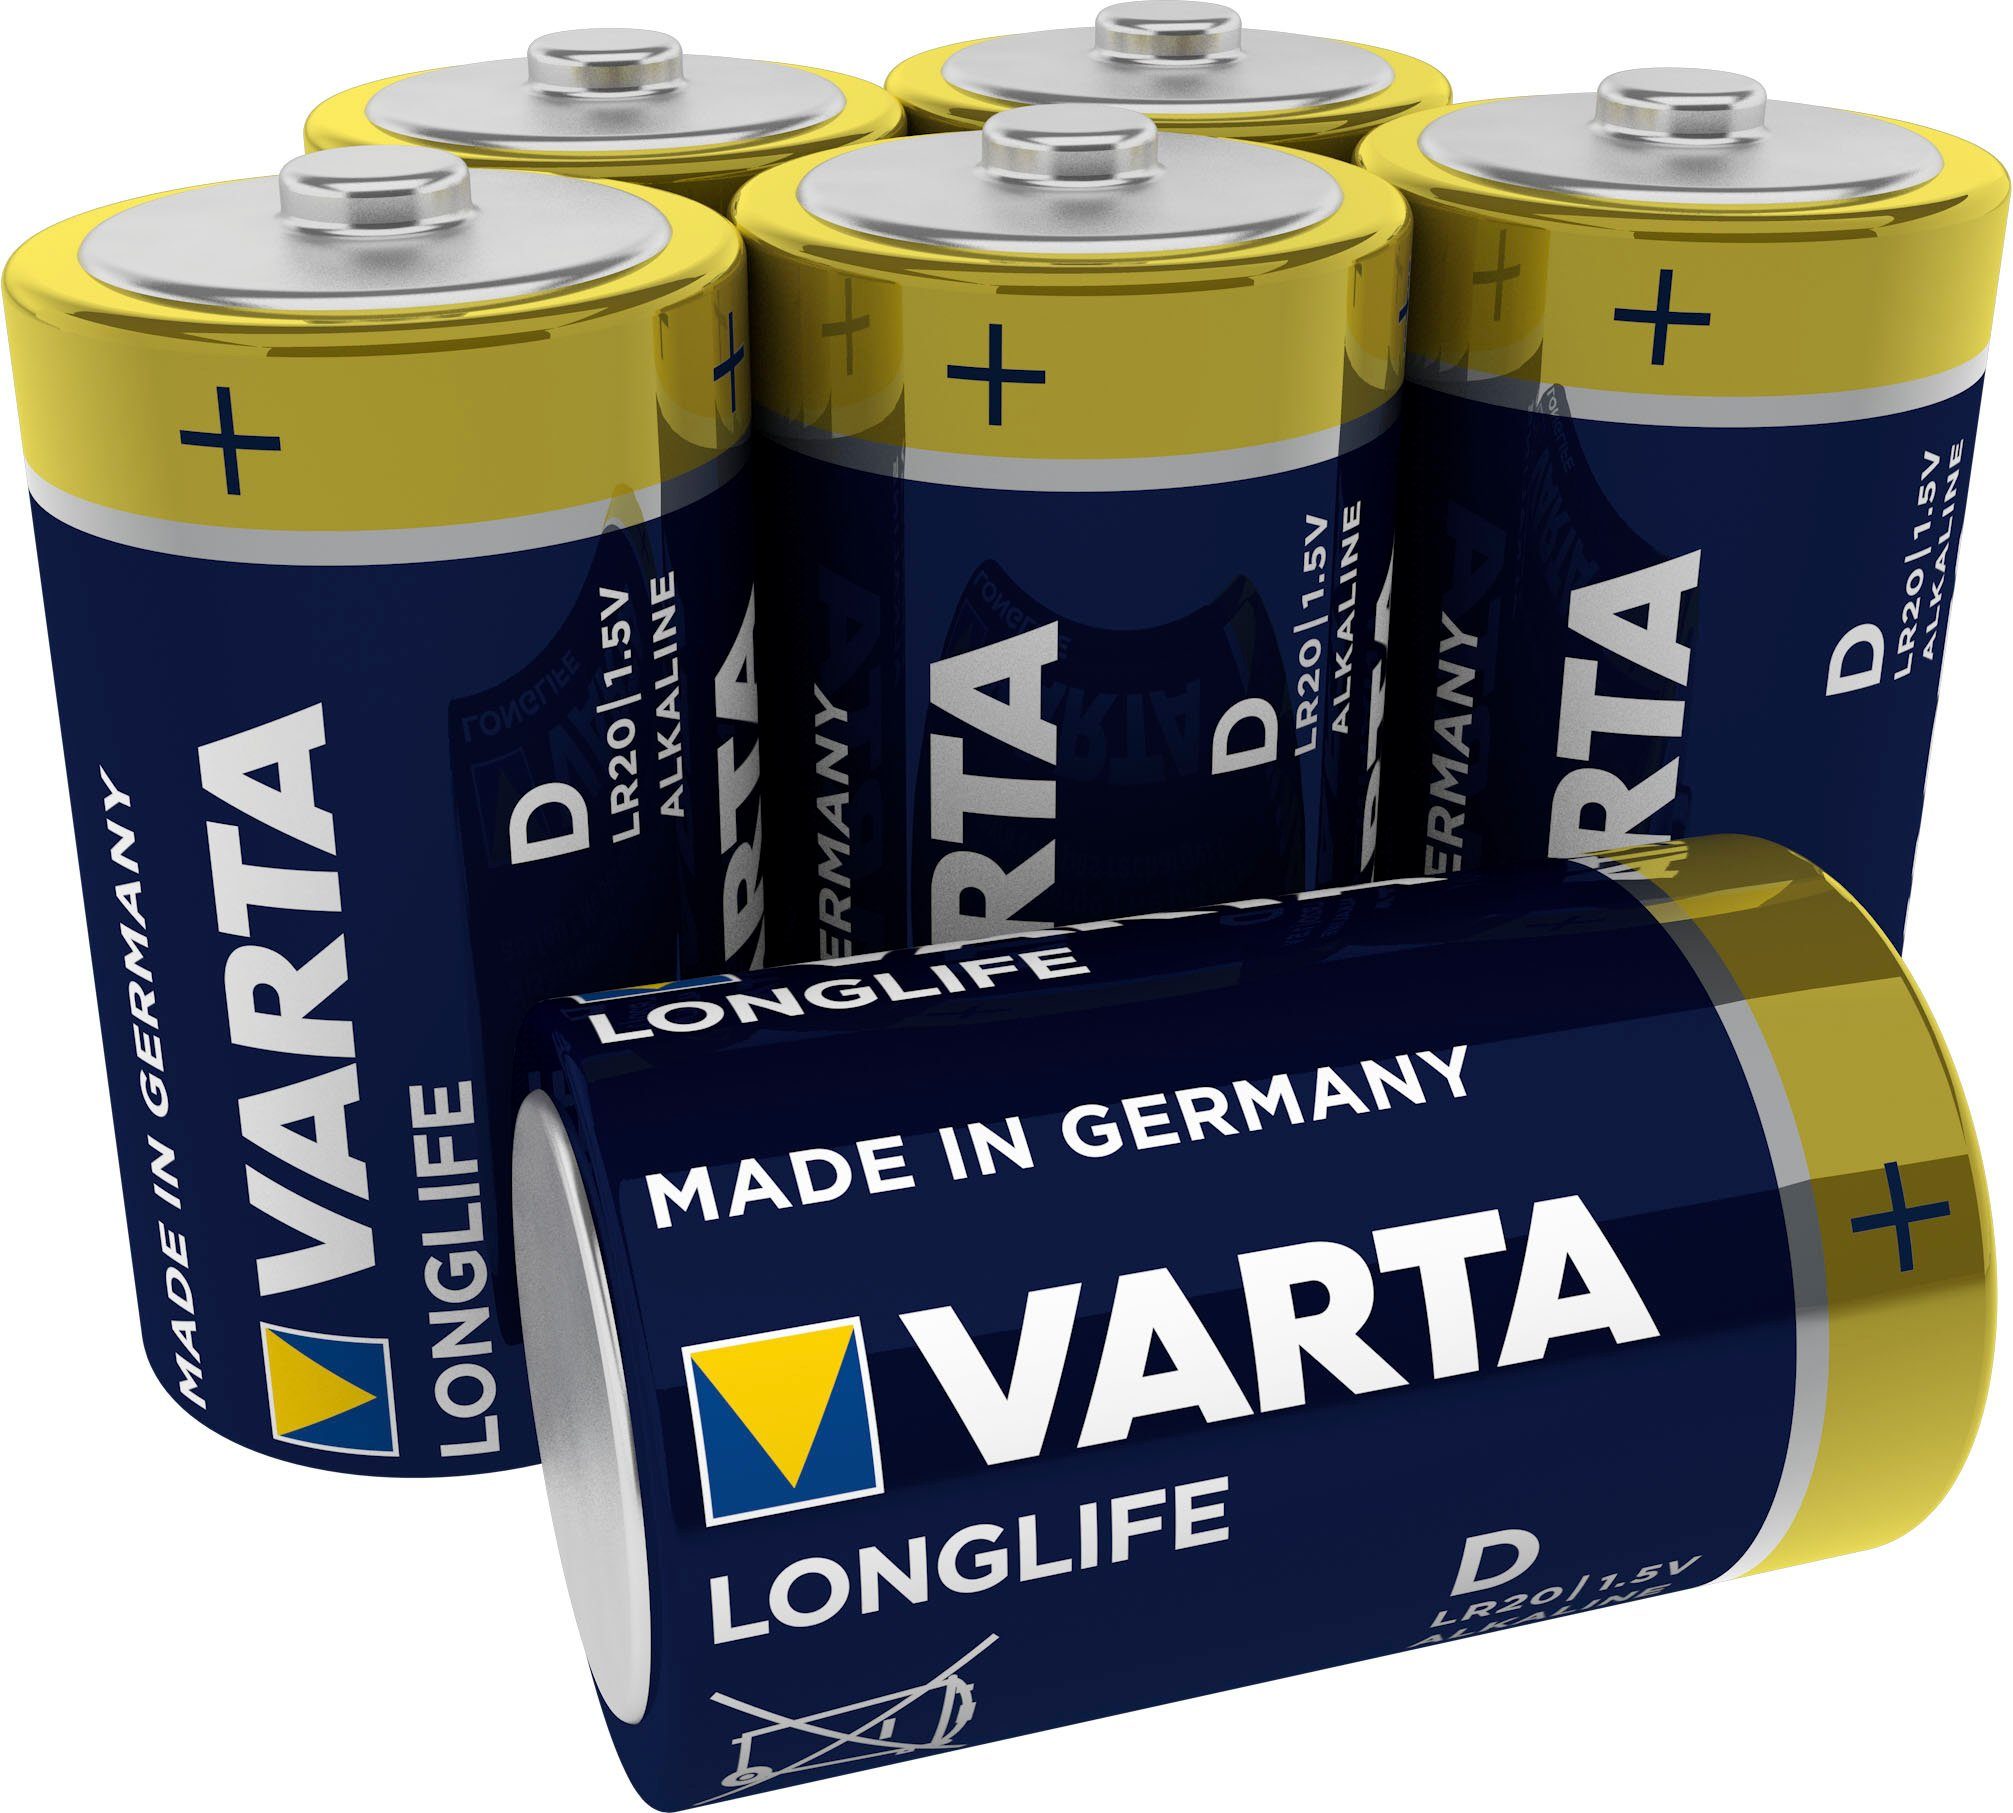 VARTA »LONGLIFE Alkaline Batterie D Mono LR20 6er Batterien Pack Made in  Germany« Batterie, (1,5 V) online kaufen | OTTO